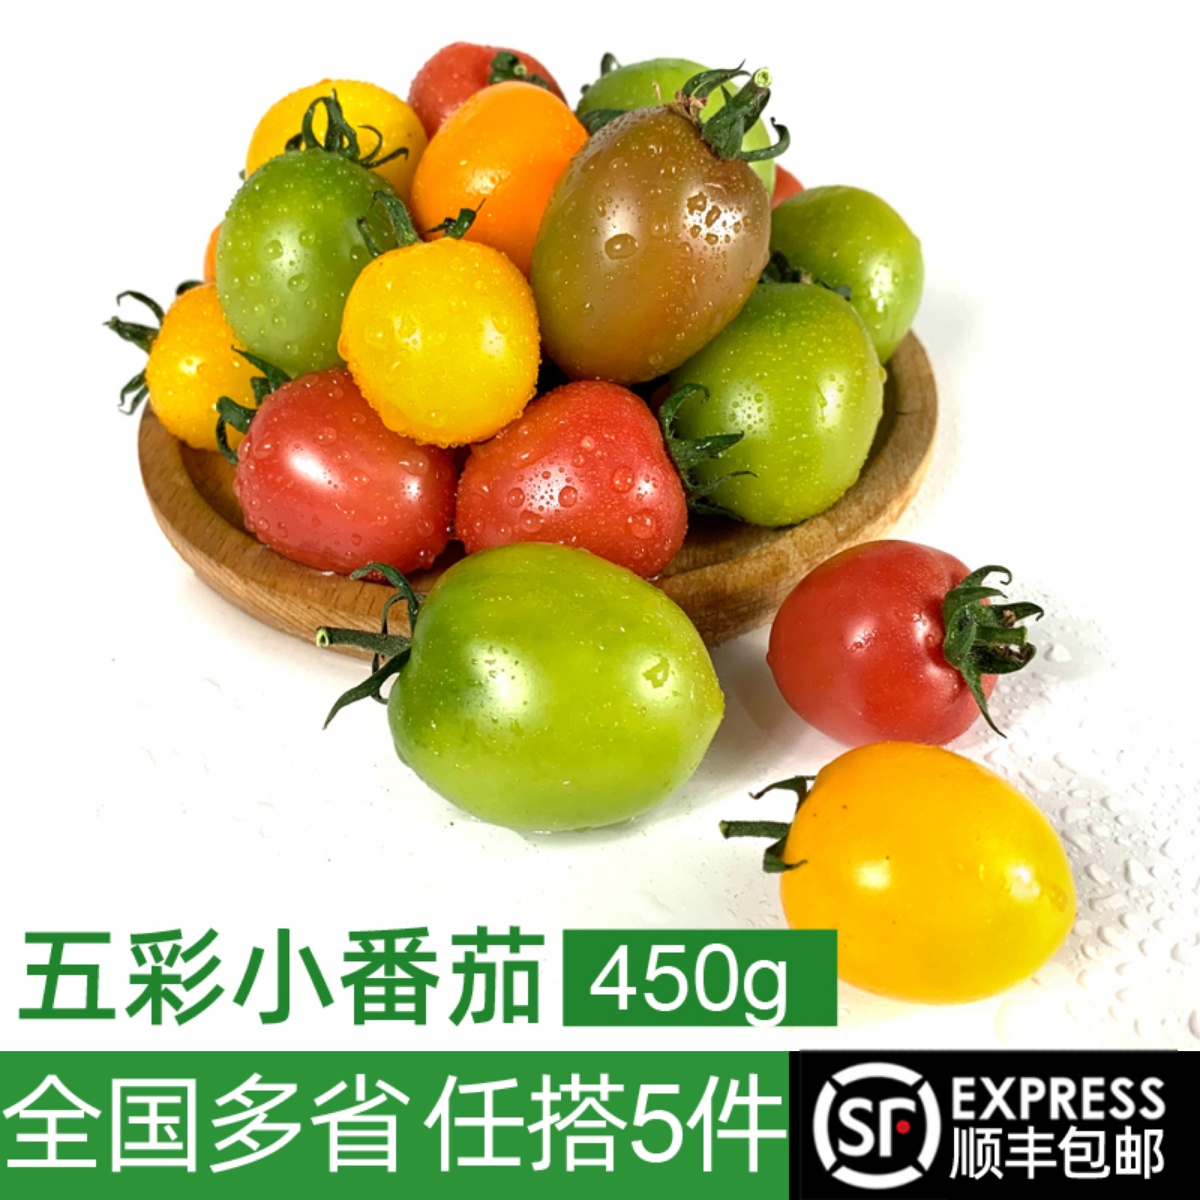 新鲜五彩小番茄1盒450g 彩色小西红柿酸甜小番茄圣女果 满5件包邮